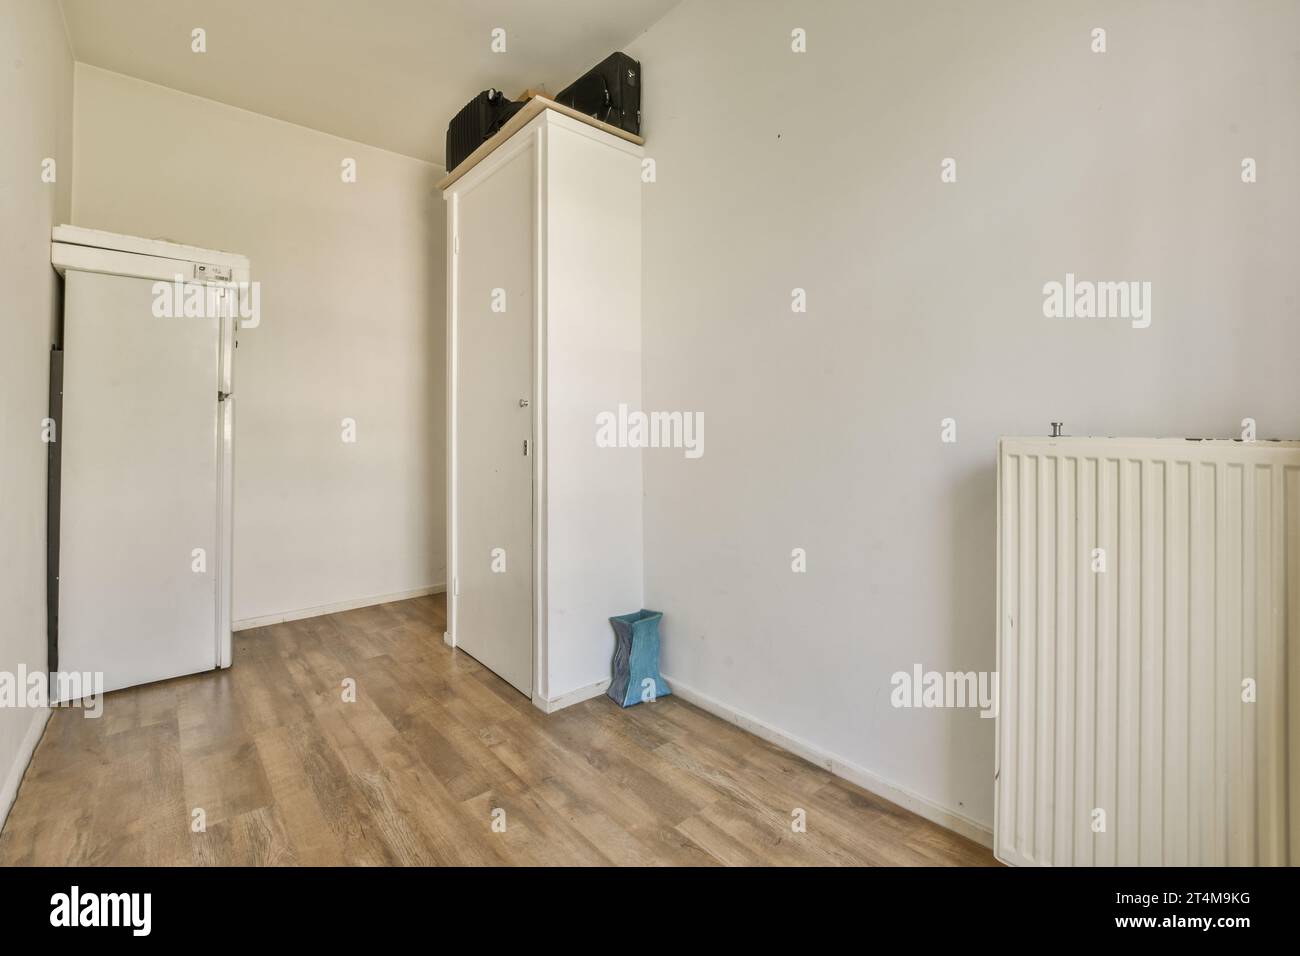 Radiator floors immagini e fotografie stock ad alta risoluzione - Alamy